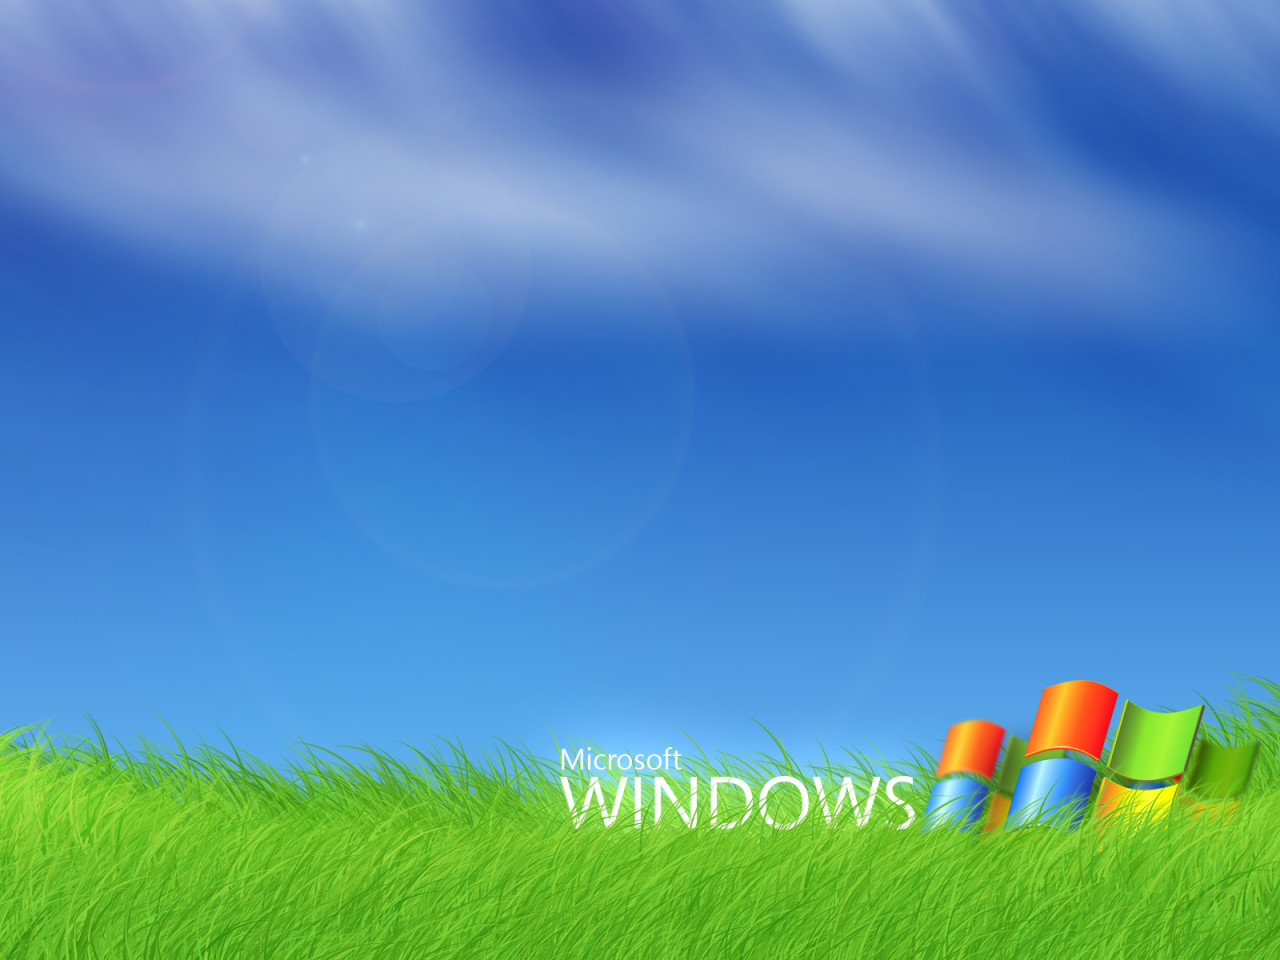 Windows Vista - green grass